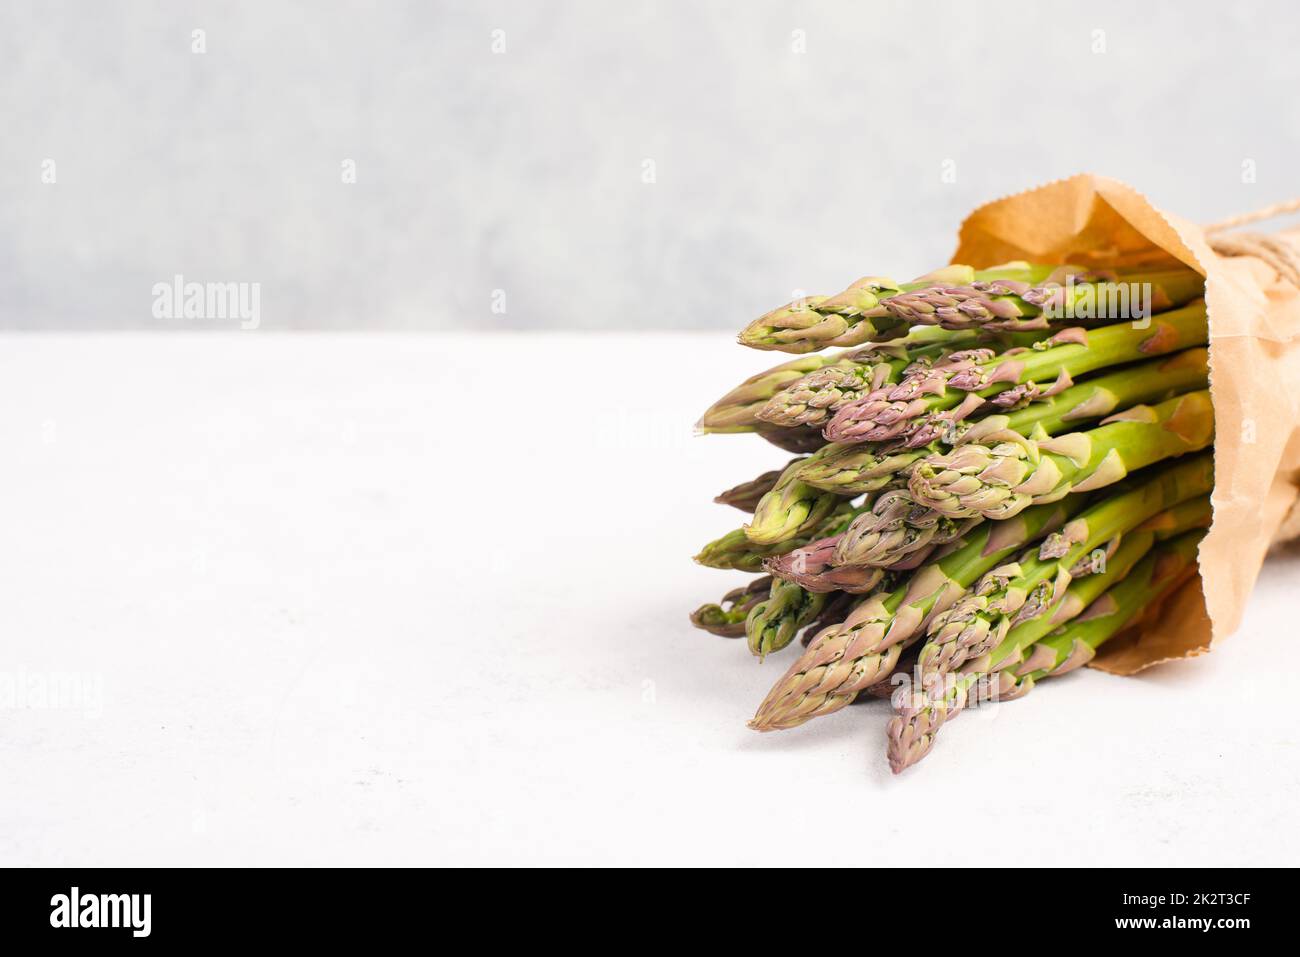 Frisches grünes Spargelbündel auf einem weiß strukturierten Tisch, Gemüse im Frühjahr, Gourmet-Küche, Kochen einer veganen Mahlzeit Stockfoto